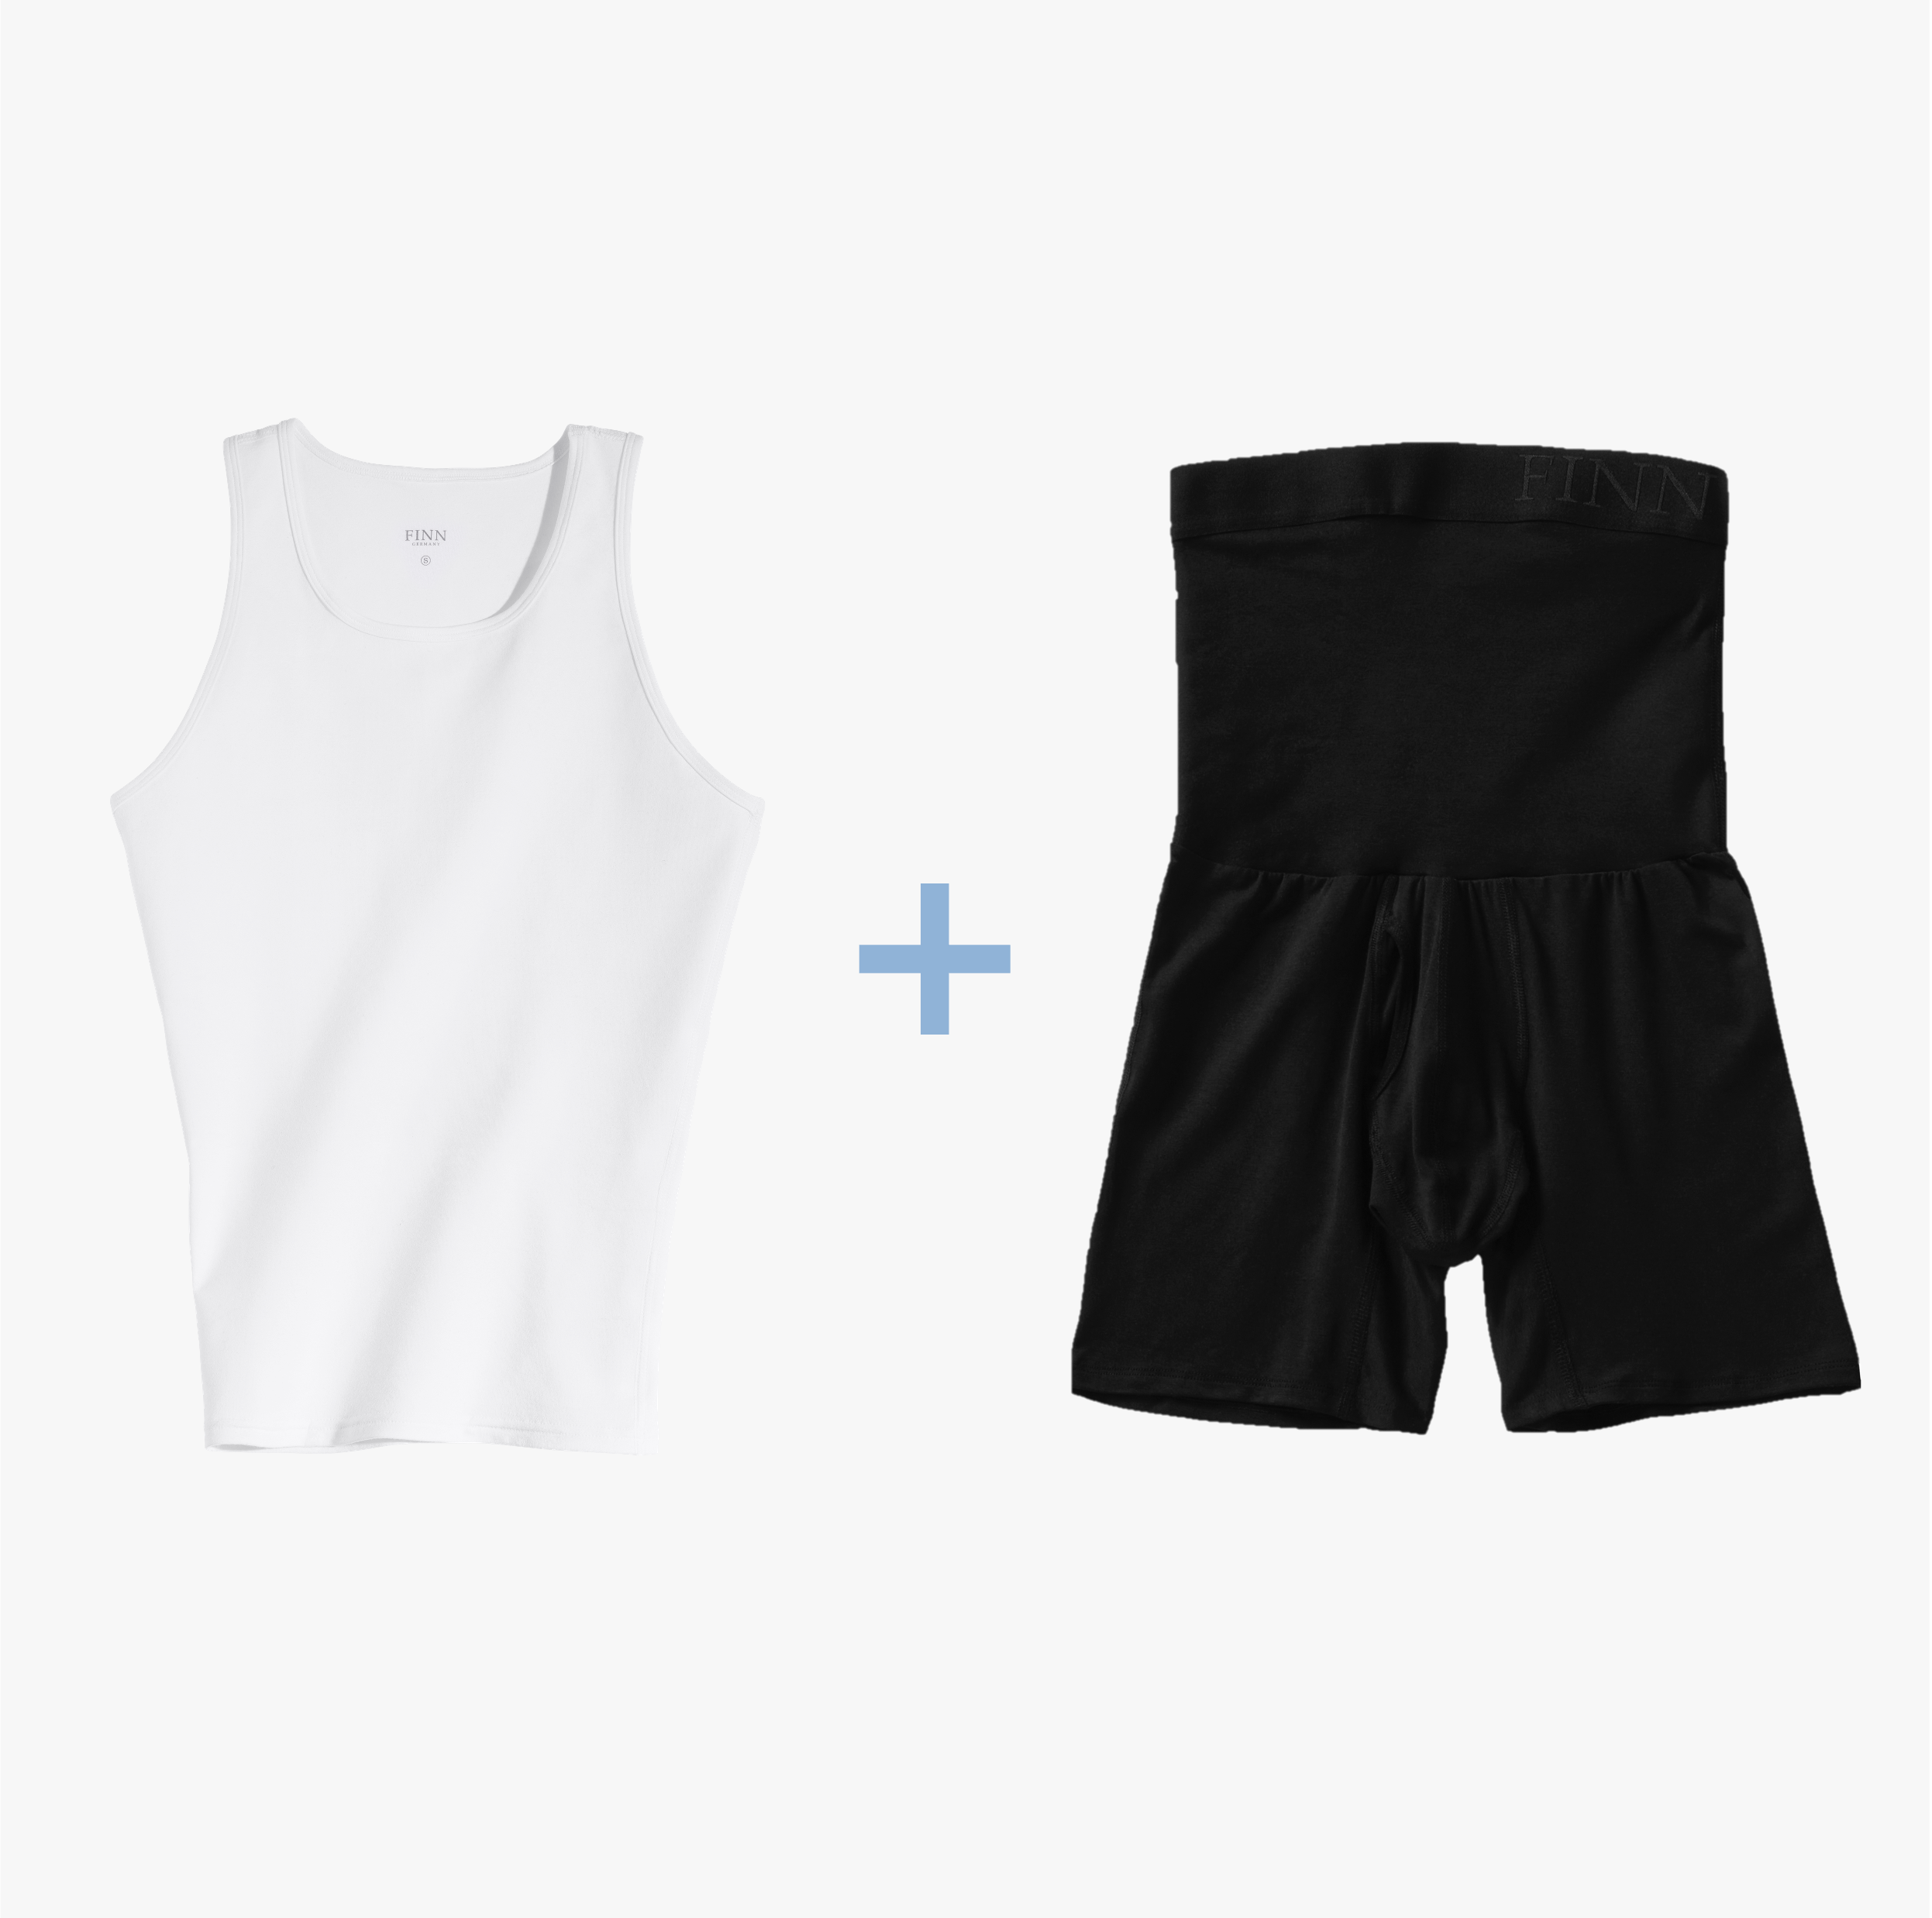 Ein Set mit weißem Kompressions-Unterhemd und schwarzen Shape-Boxershorts für Herren. Starker Bauch-weg Effekt, hochwertige Baumwolle, maximaler Tragekomfort.